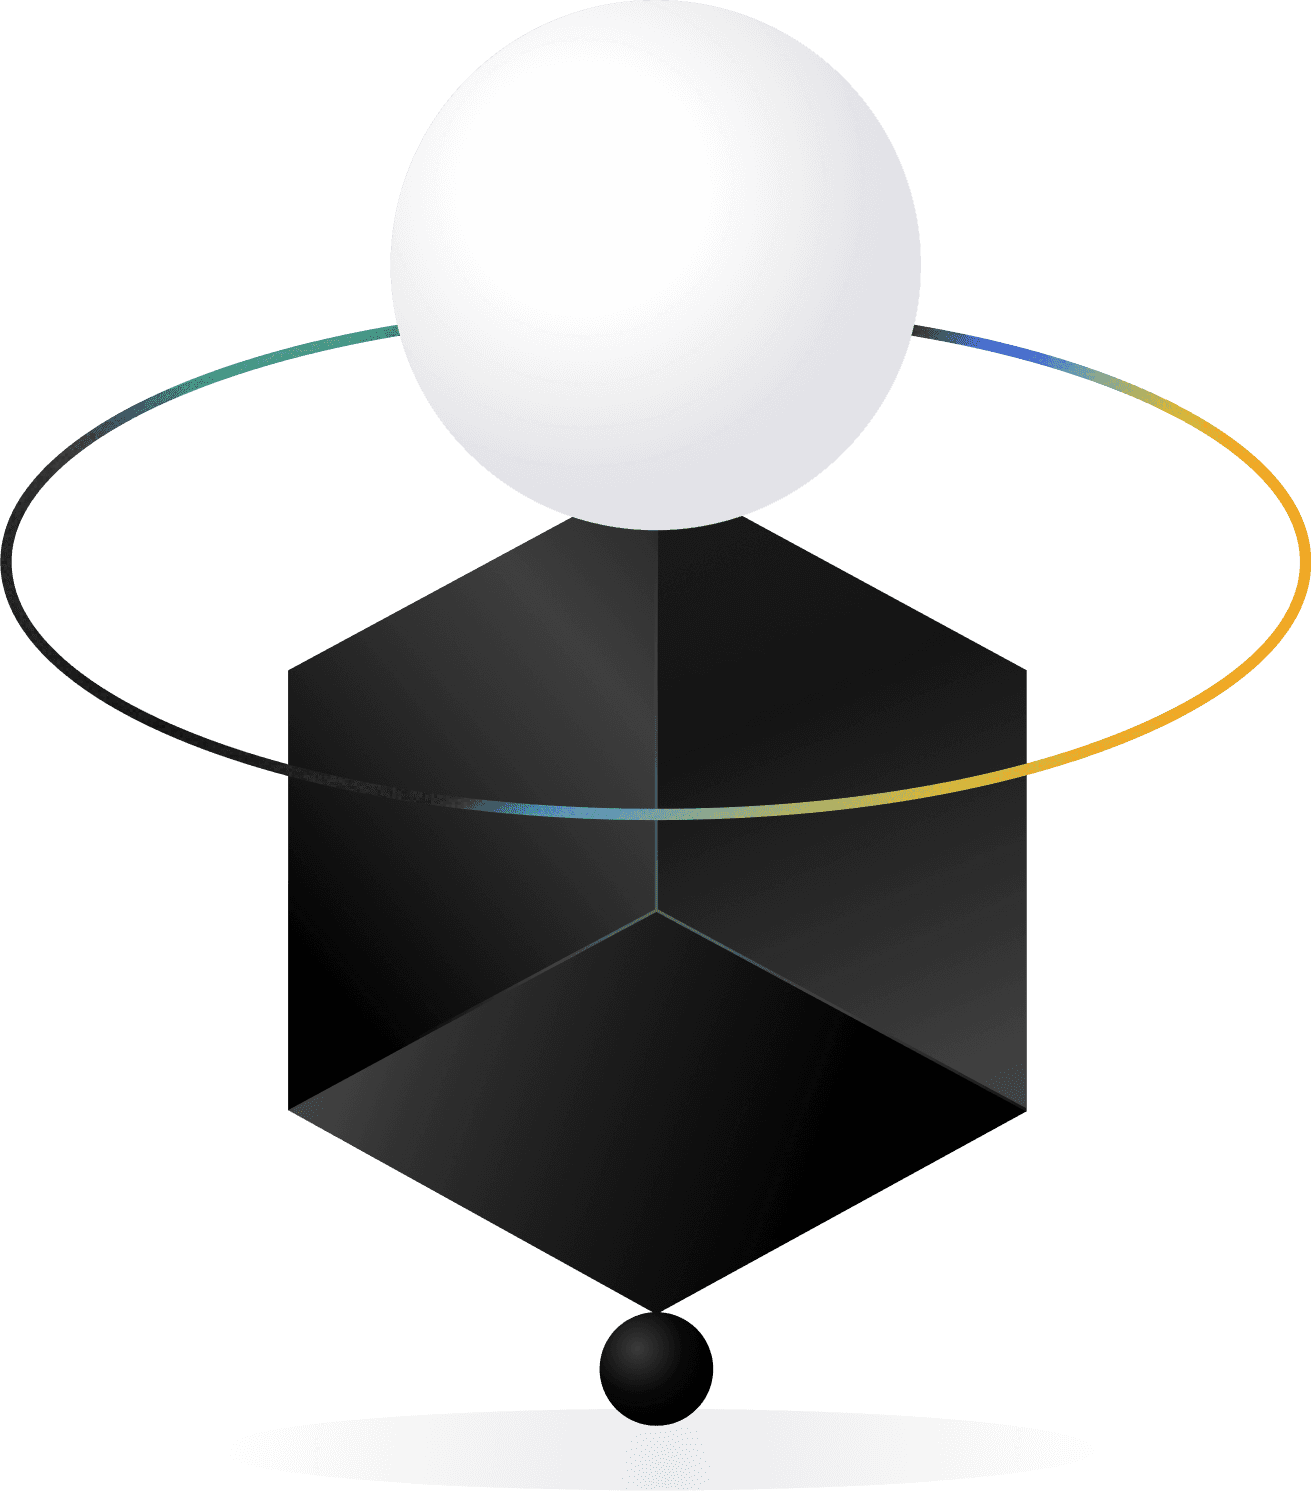 Abstrakt grafik med mörk kub och ljus sfär för att bryta upp en UX-fallstudie.